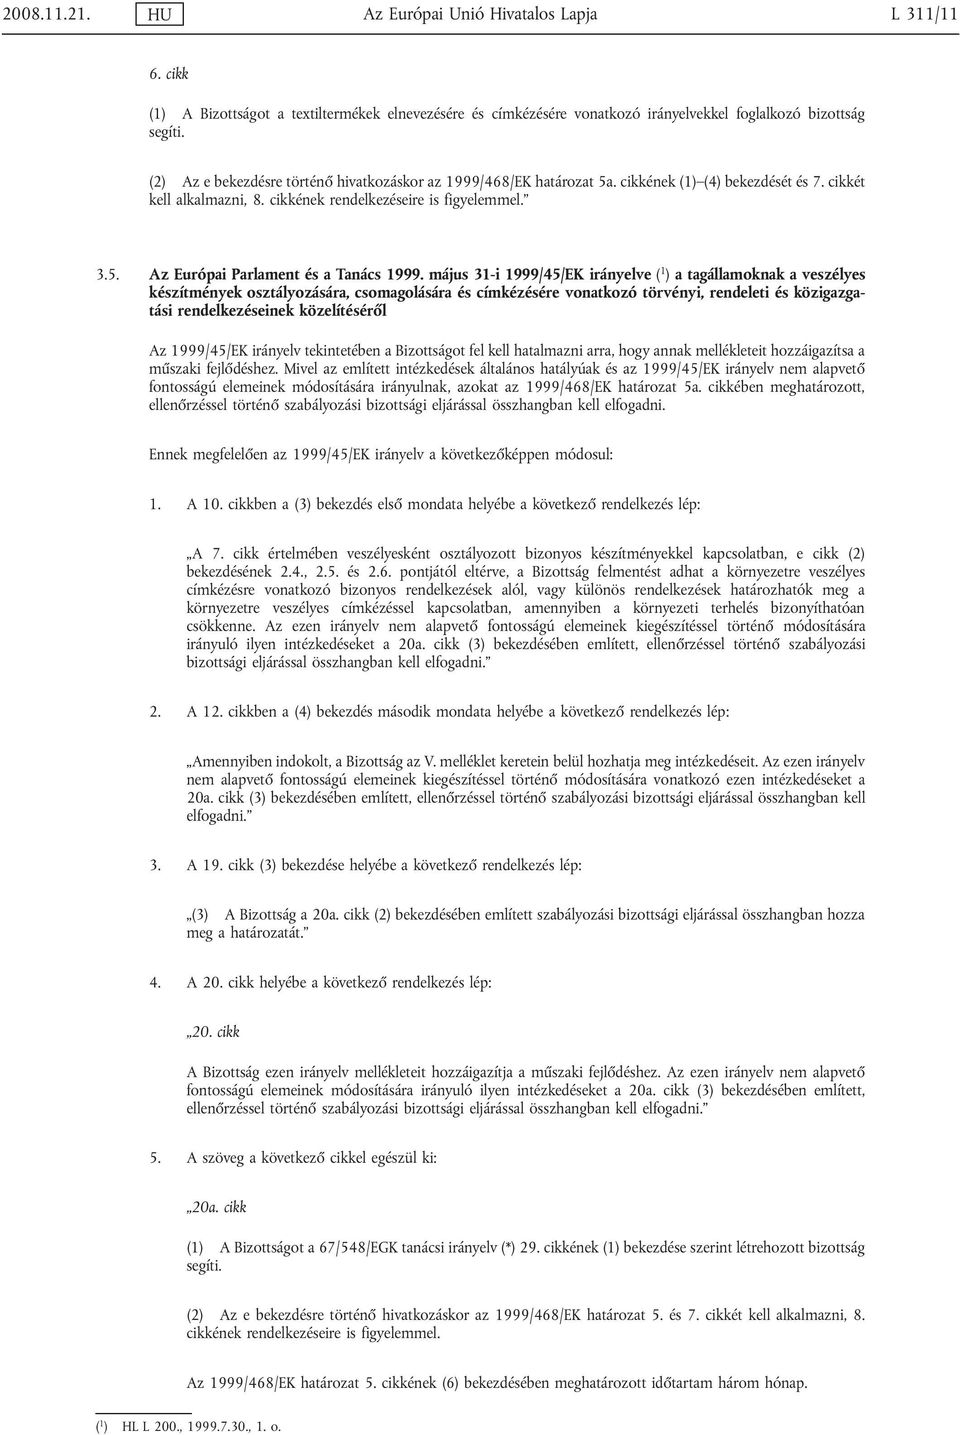 május 31-i 1999/45/EK irányelve ( 1 ) a tagállamoknak a veszélyes készítmények osztályozására, csomagolására és címkézésére vonatkozó törvényi, rendeleti és közigazgatási rendelkezéseinek